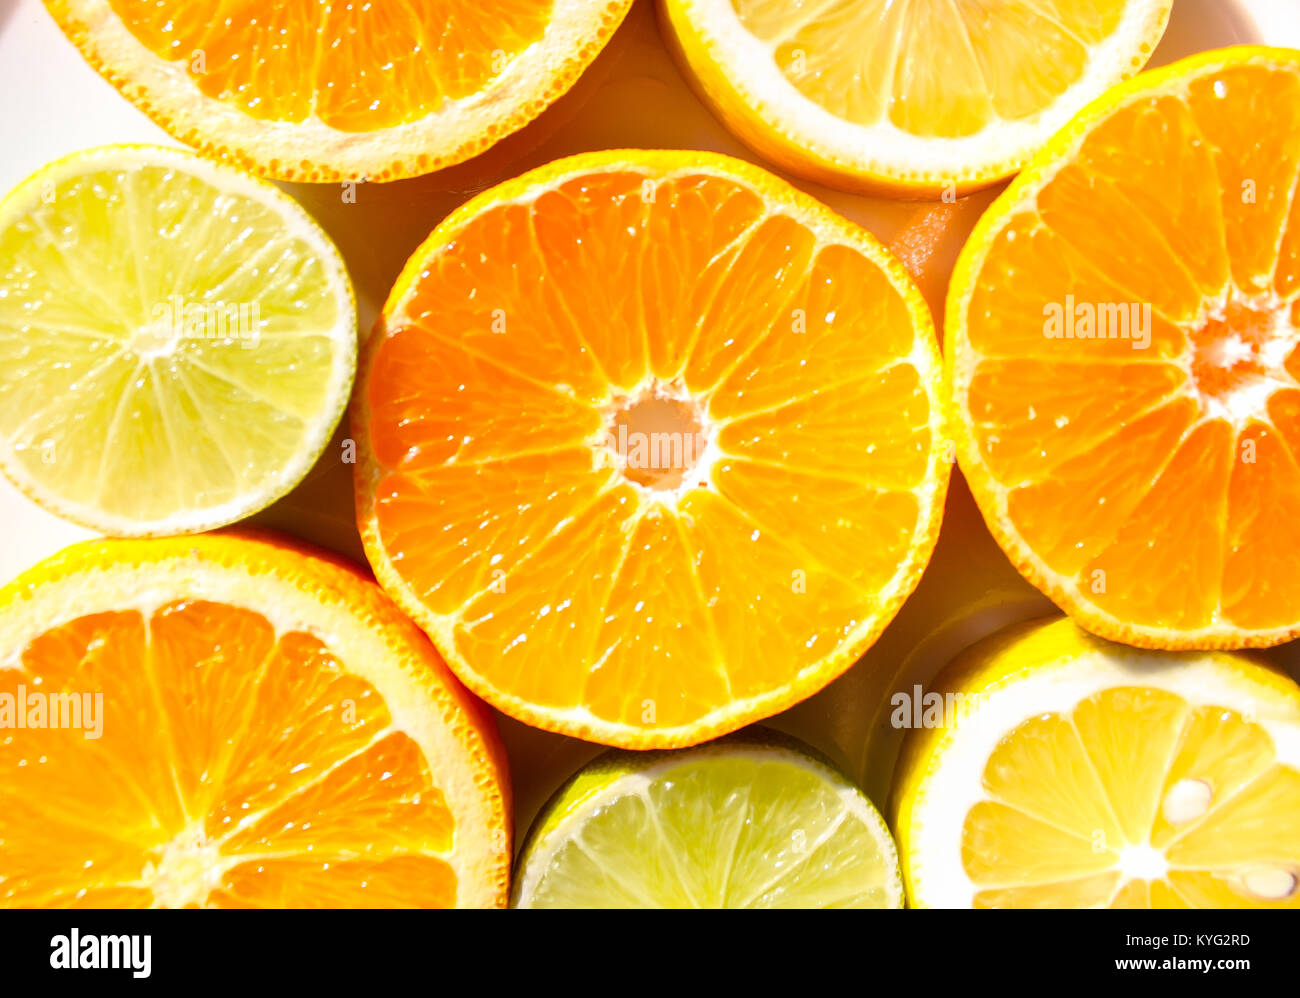 Scheiben von Orangen, Zitronen, Limonen und Mandarinen Stockfoto